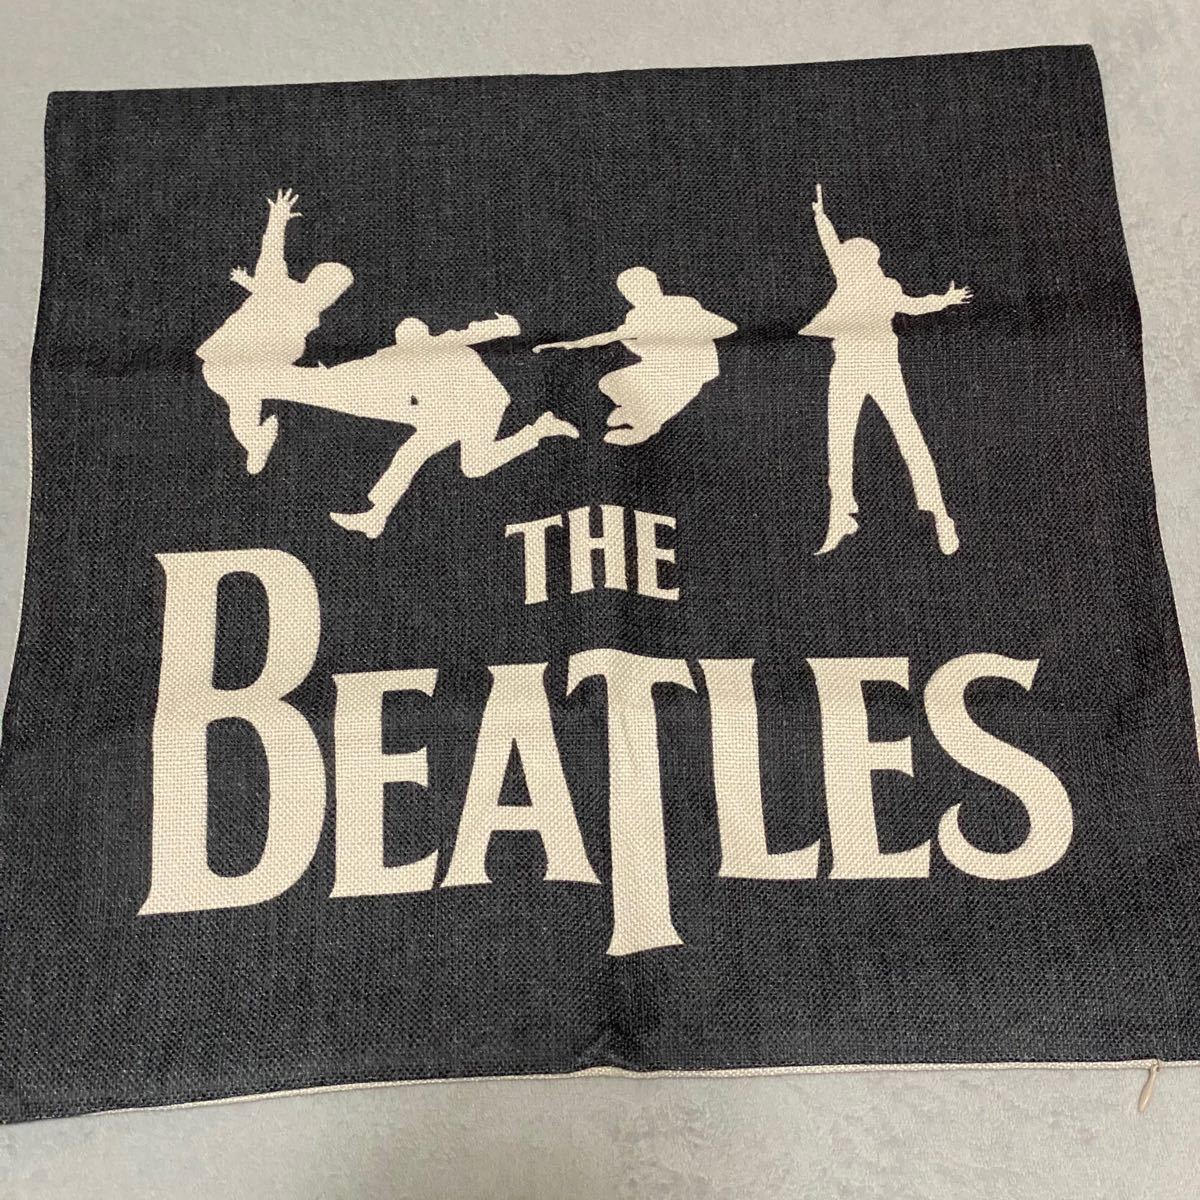 Beatles クッションカバー ビートルズ バンド 音楽 雑貨 2枚セット